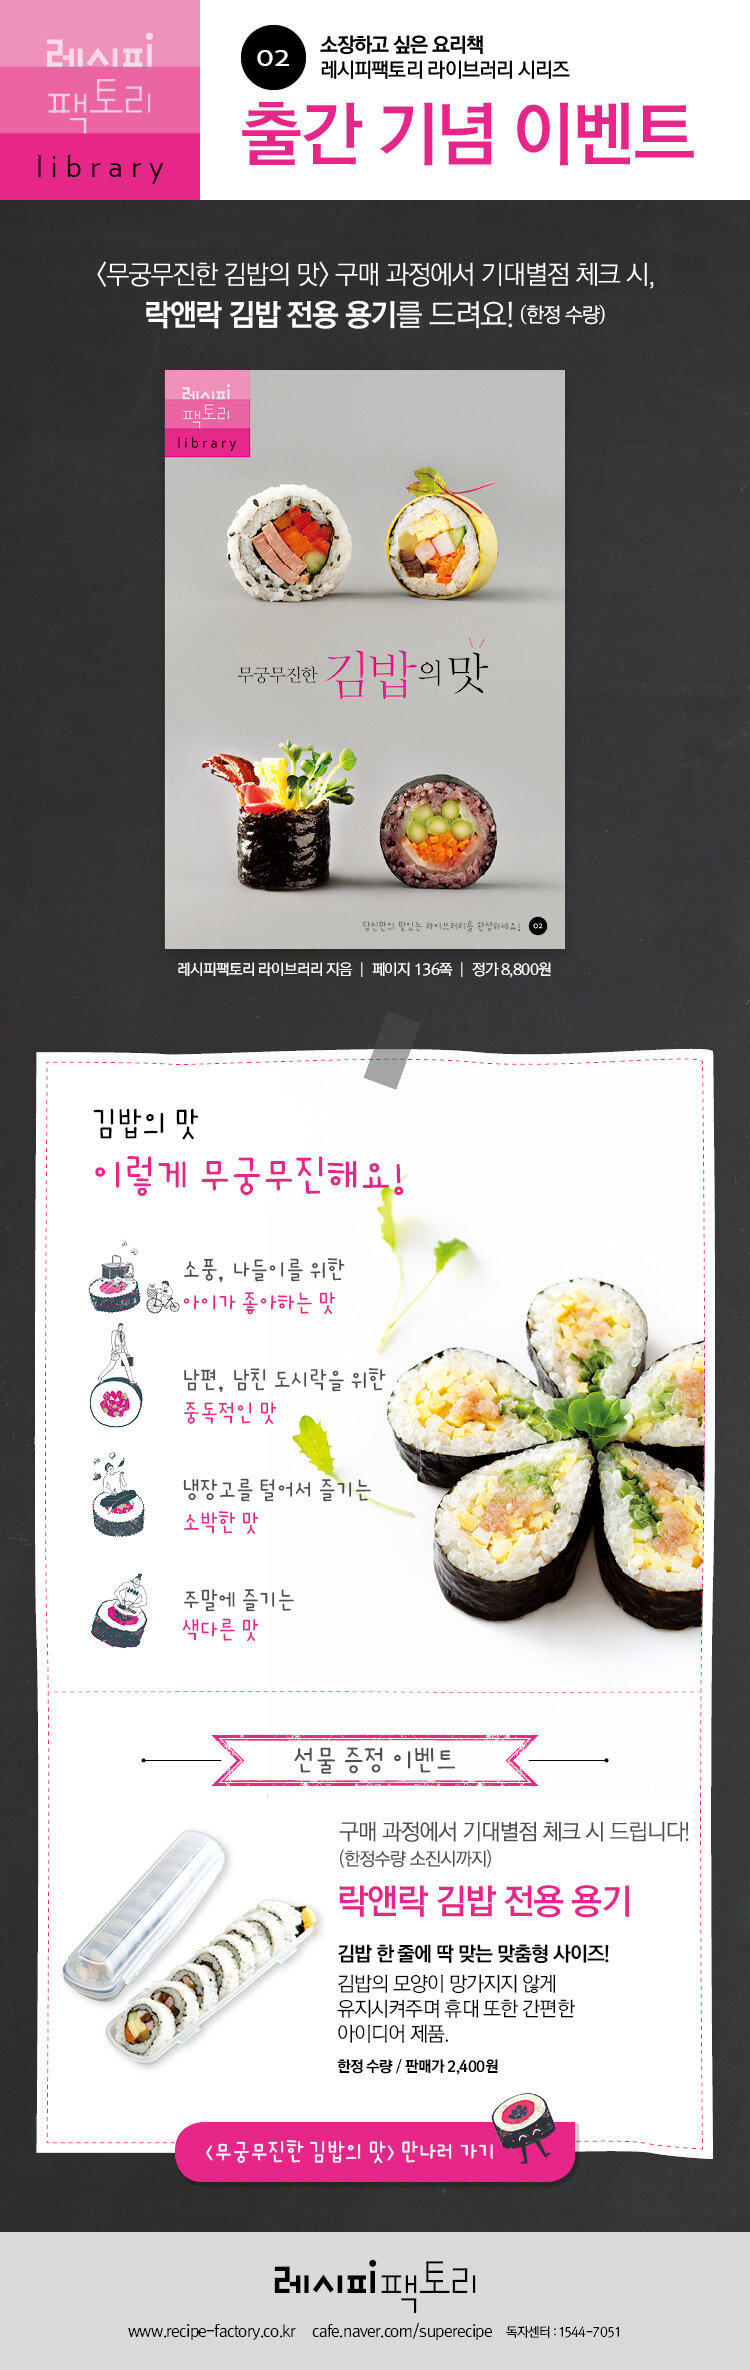 <무궁무진한 김밥의 맛> 출간 기념 이벤트